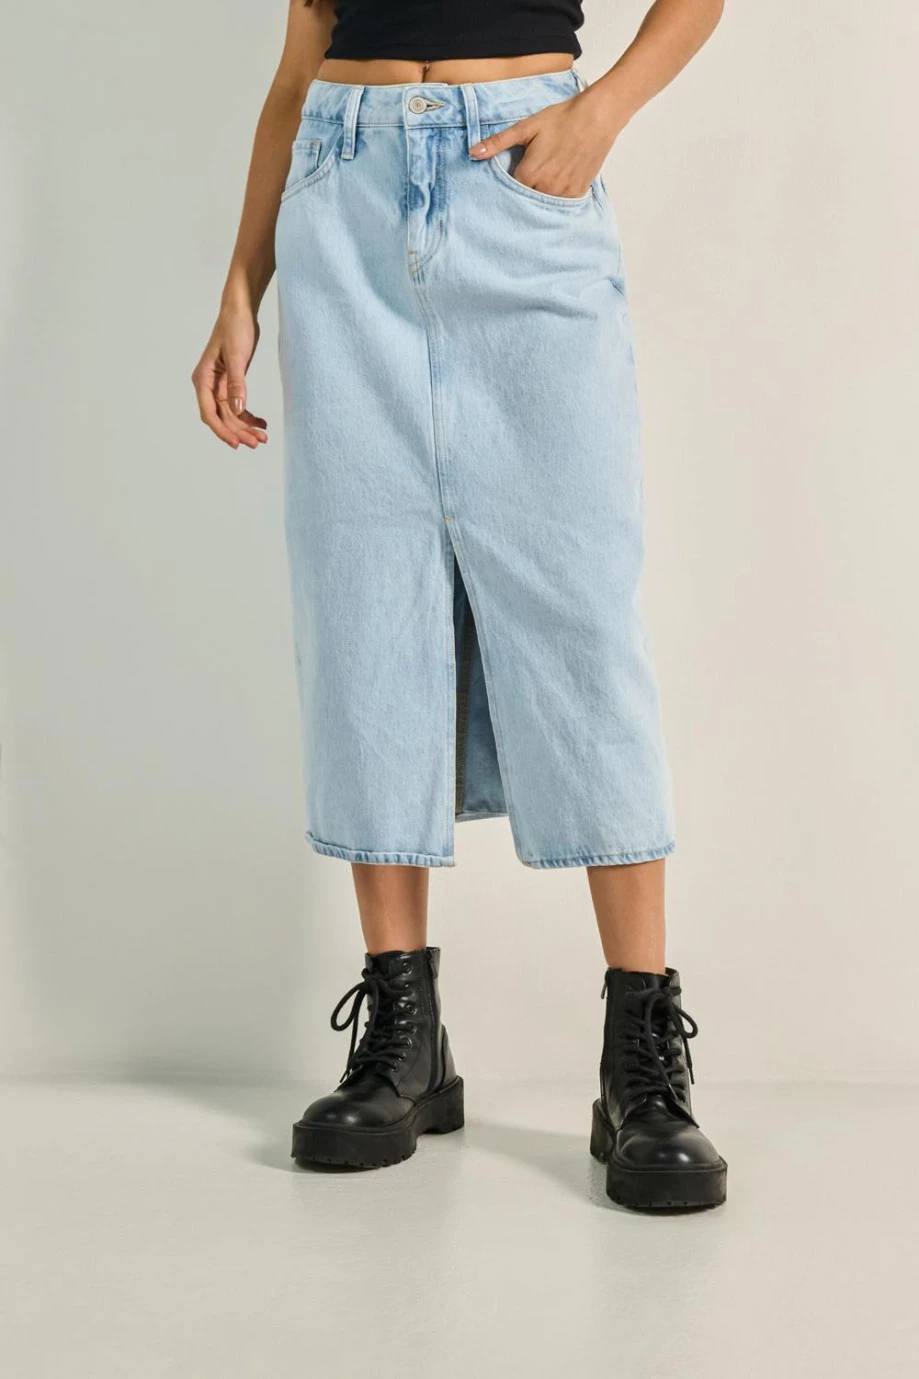 Falda larga azul en jean con abertura en frente y tiro alto